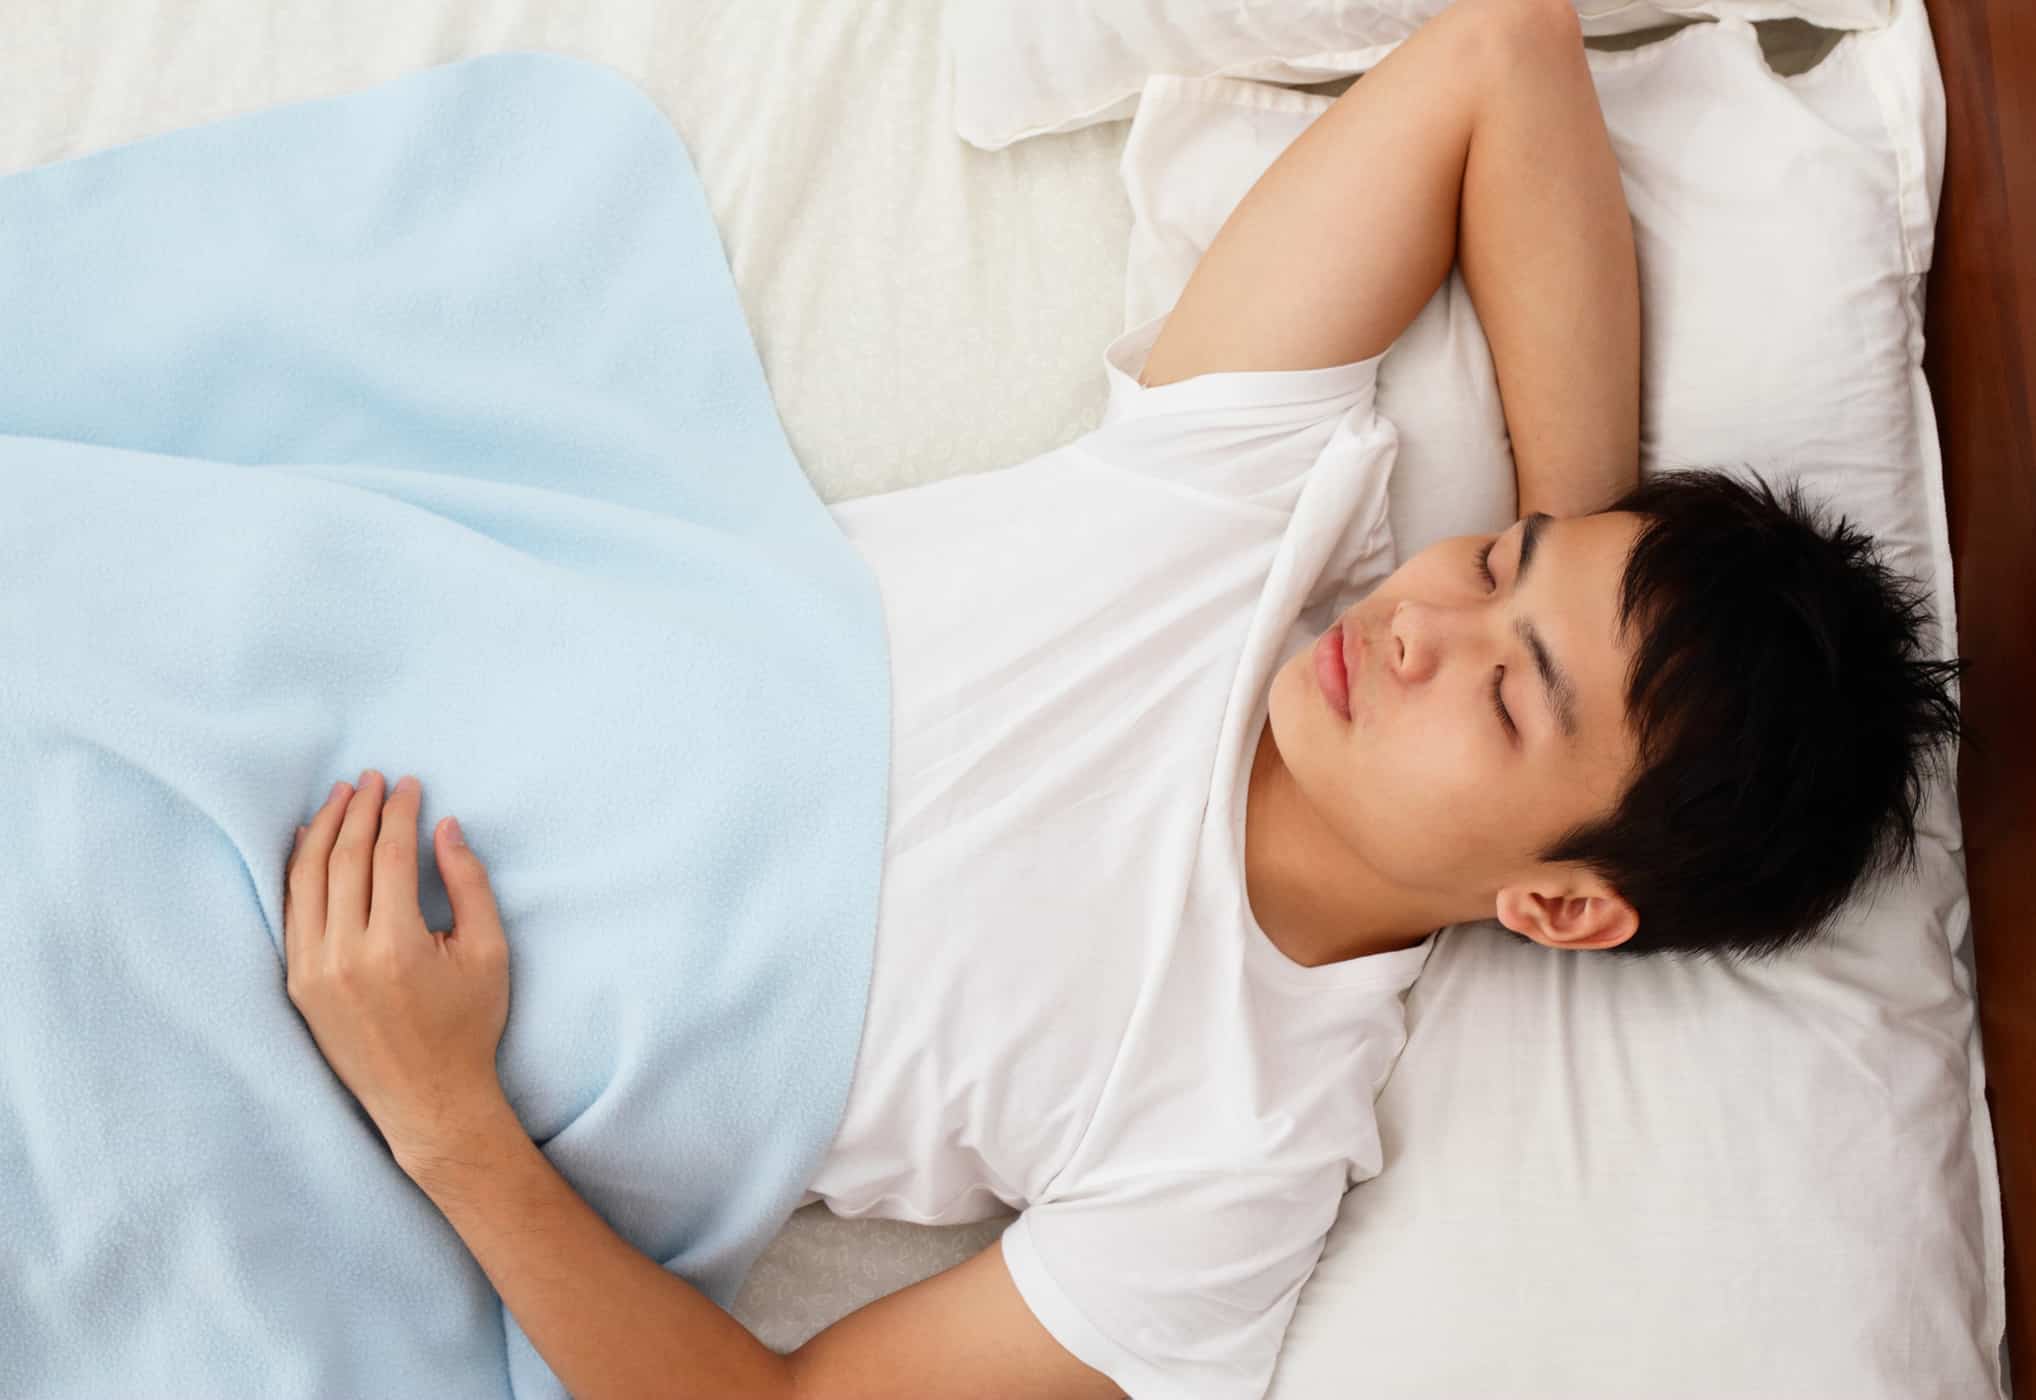 نیند کی پوزیشن ہضم کو متاثر کرتی ہے